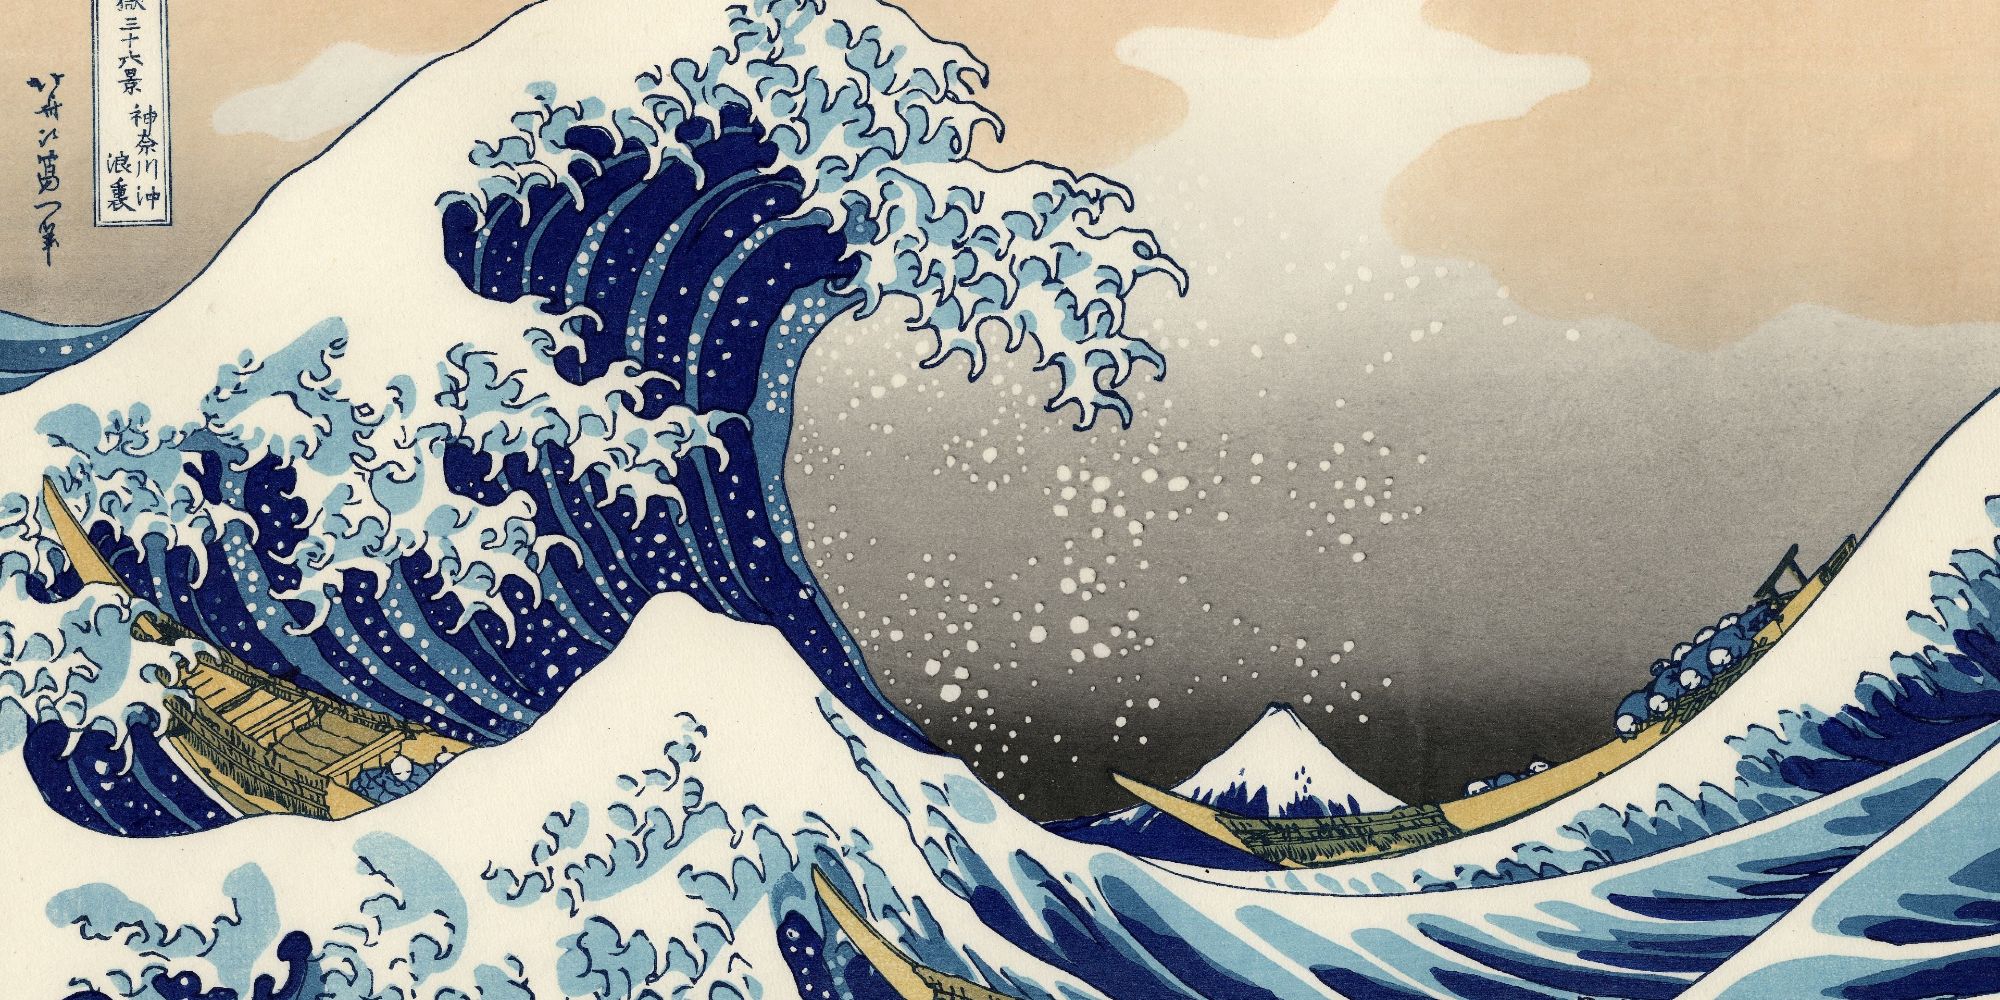 The Great Wave Off Kanagawa by Hokusai